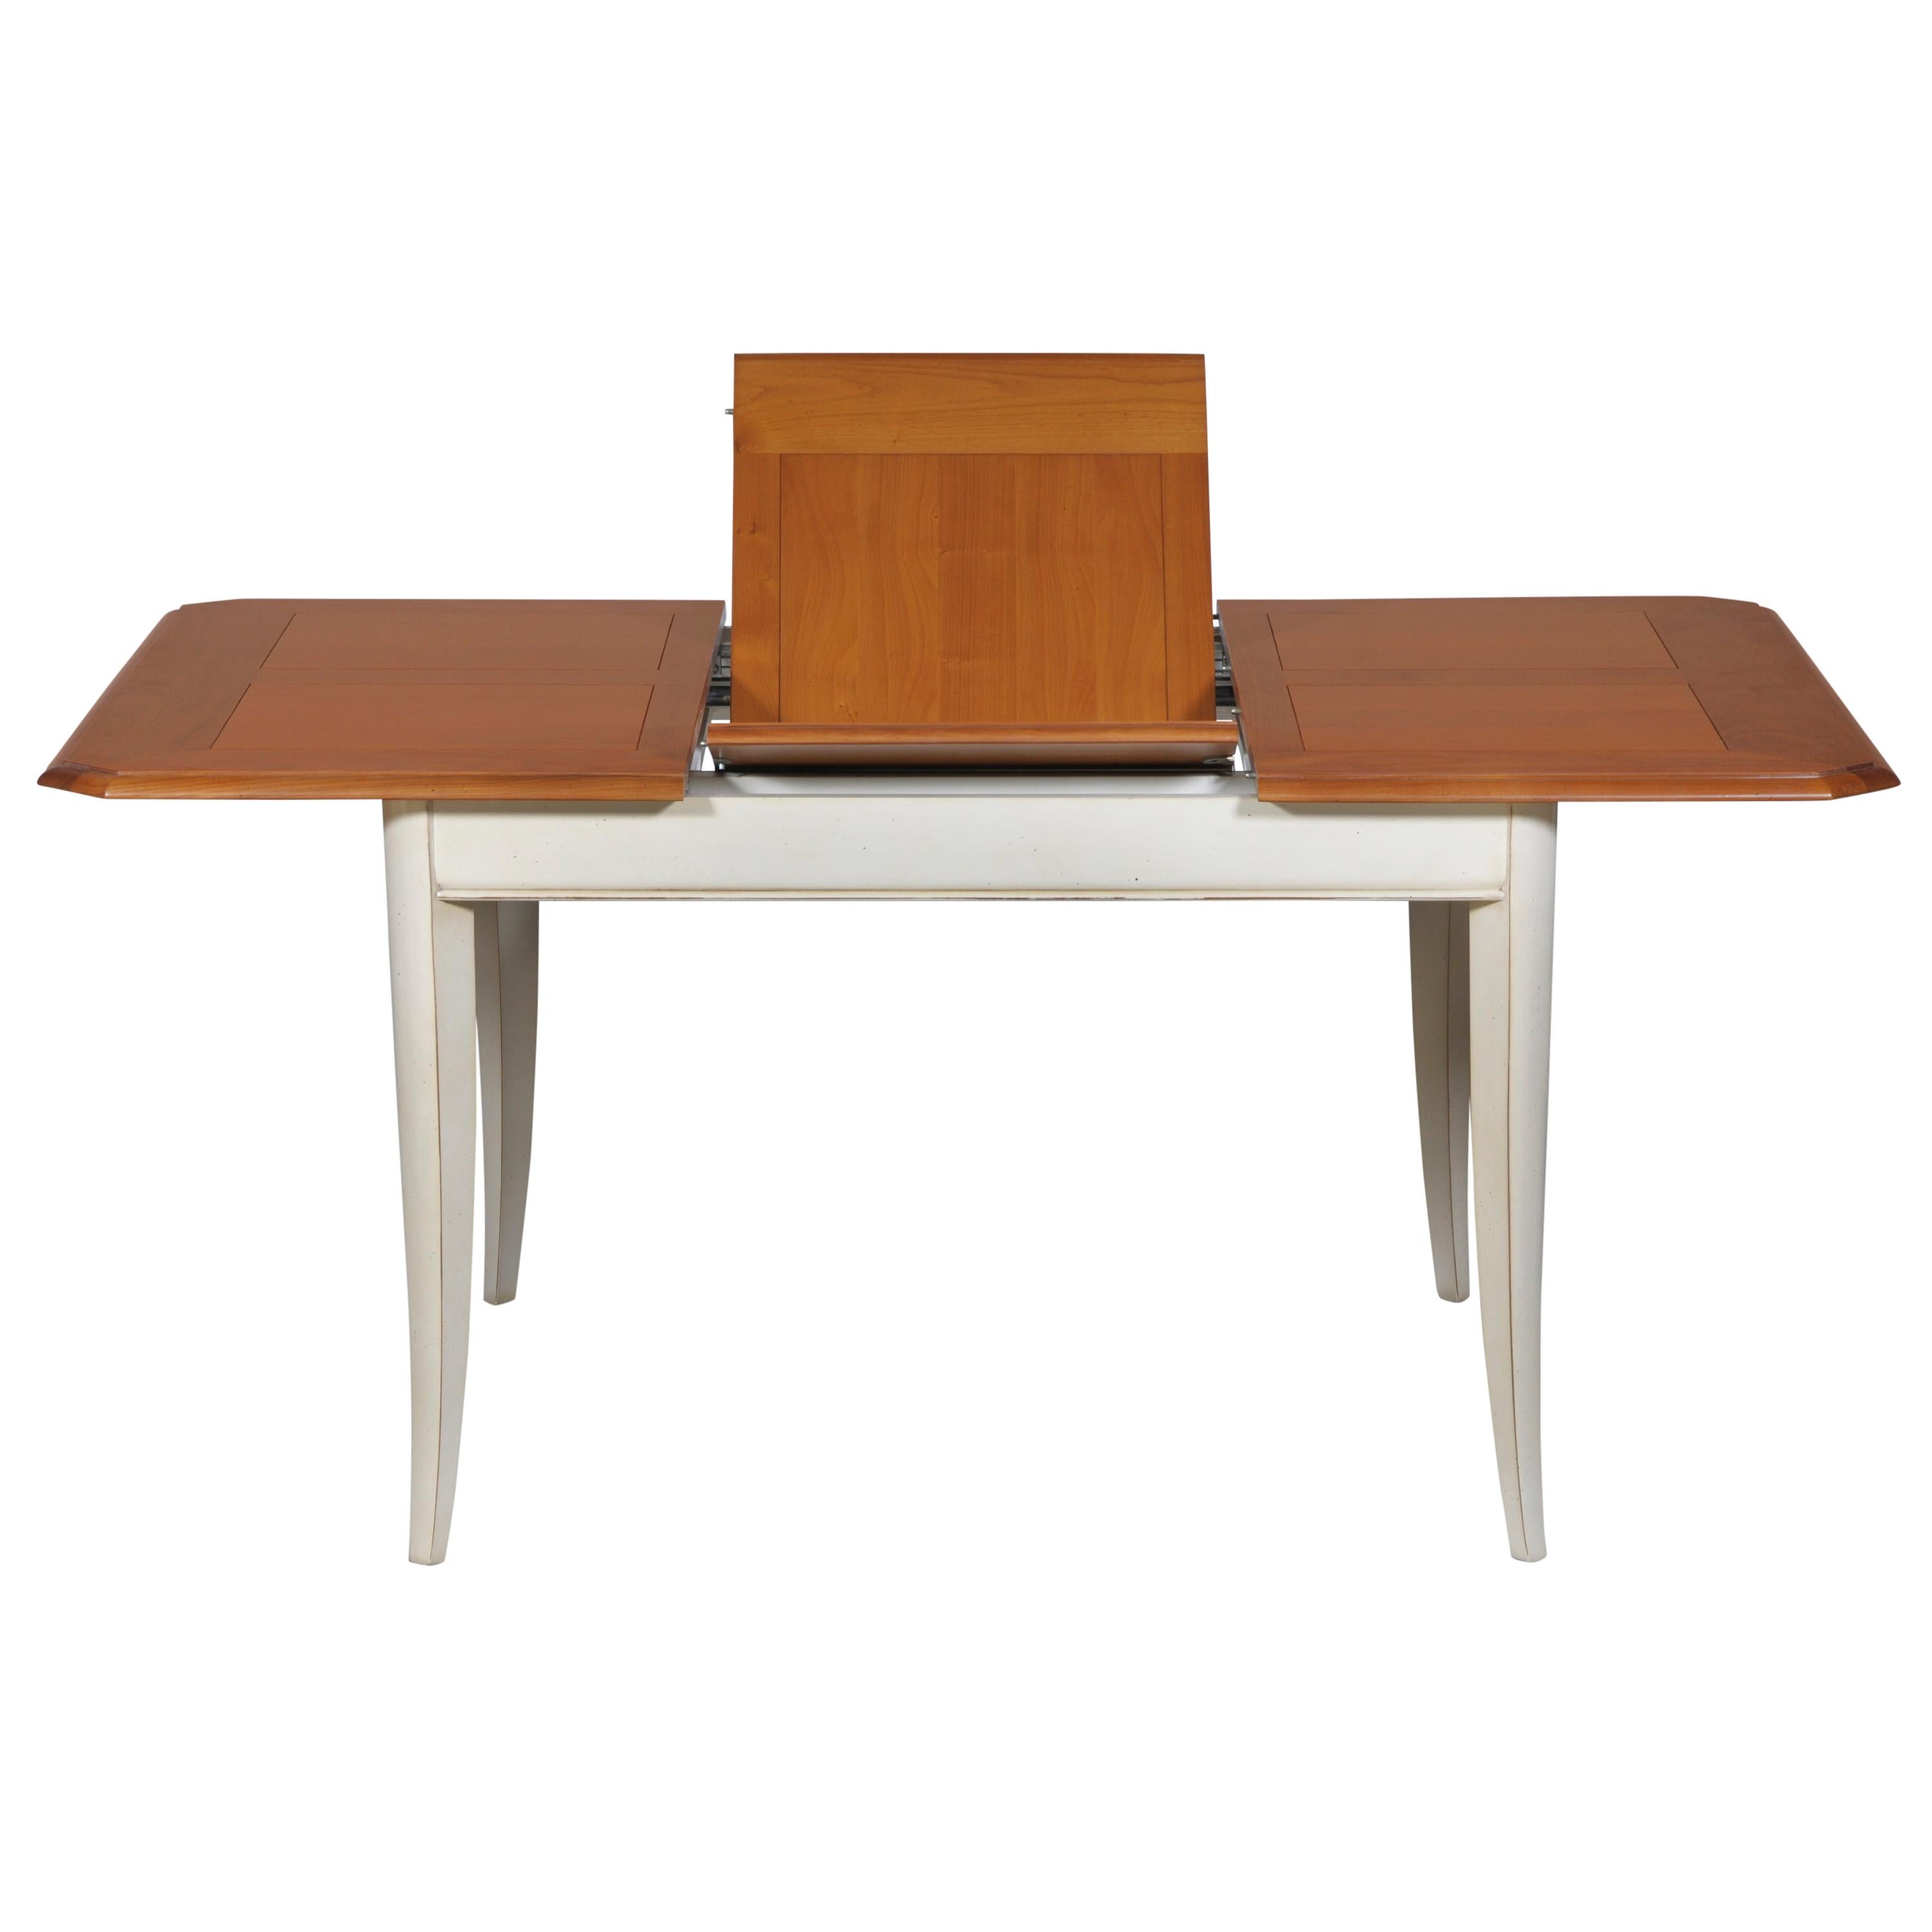 Cette table à manger carrée est typique des meubles classiques français et appartient à notre collection TRADITION qui reprend les classiques intemporels du charme de la campagne française. Les pieds en sabre, les pilastres et les rainures sont